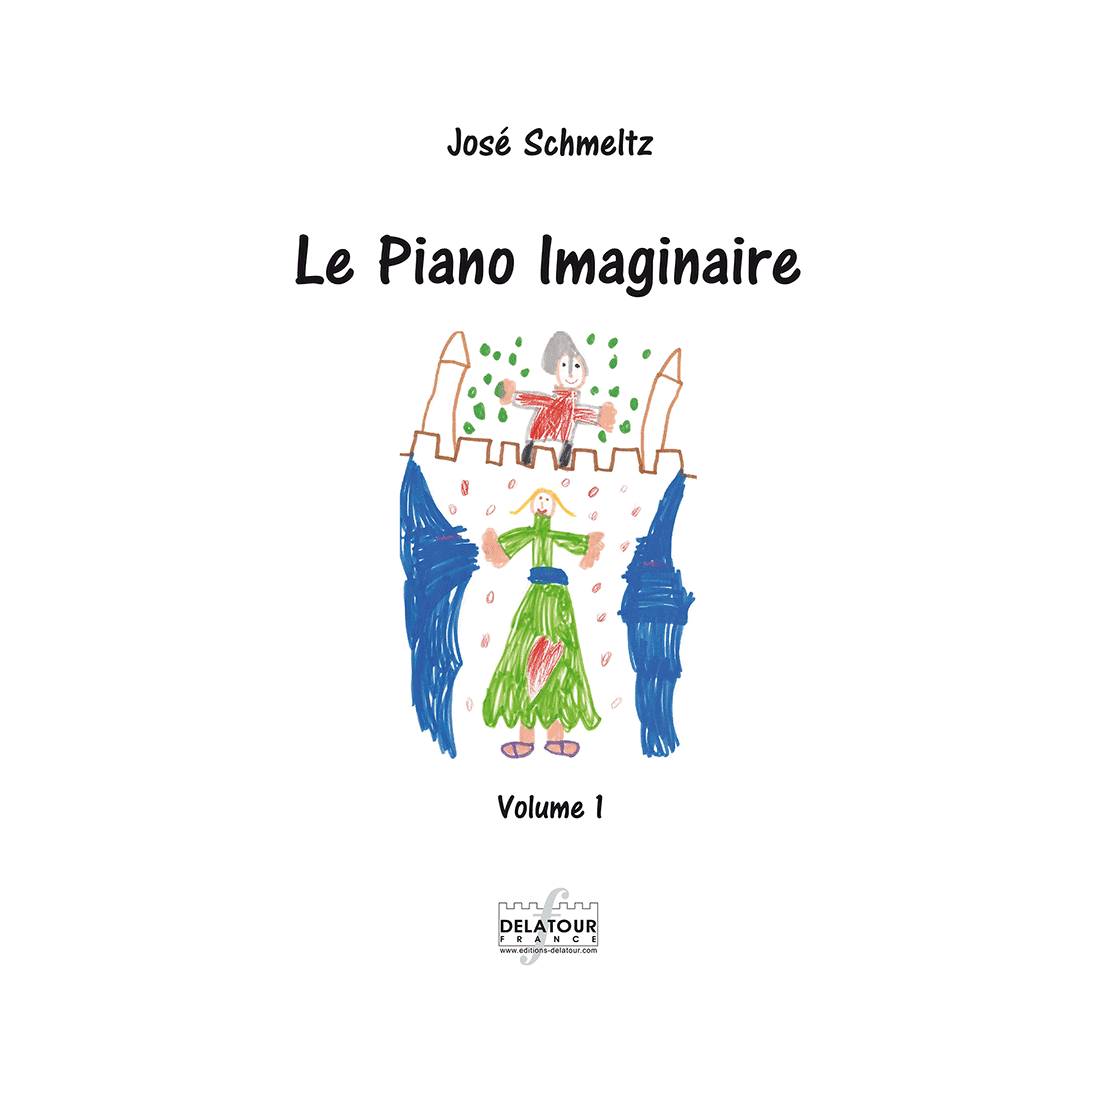 Le piano imaginaire Vol. 1